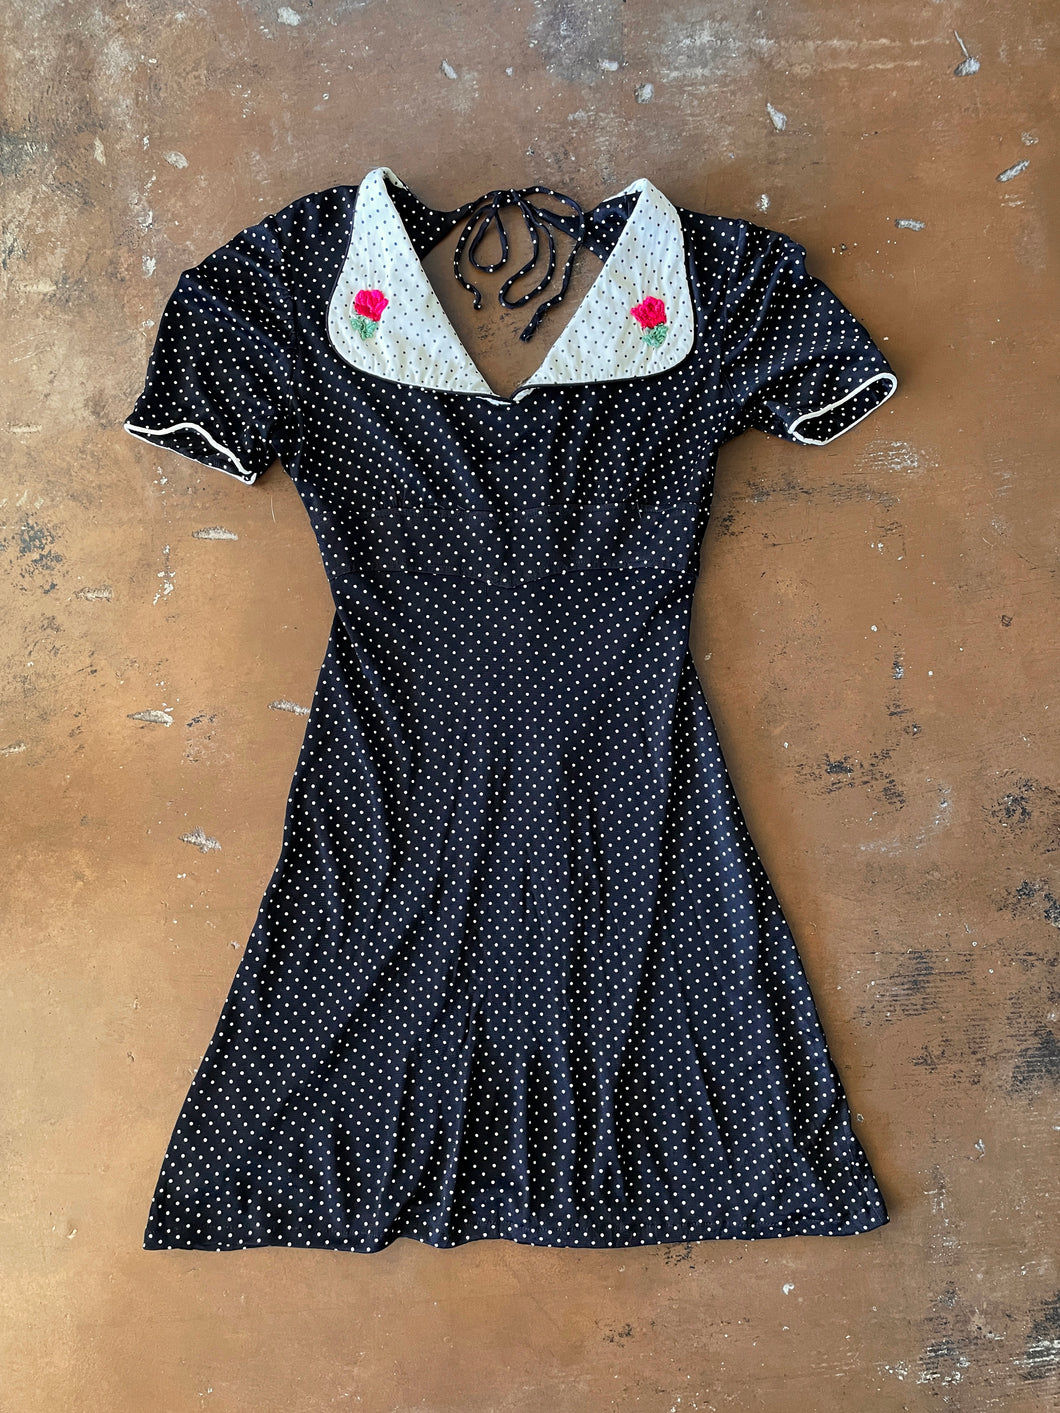 70s Polka Dot Mini Dress - XS